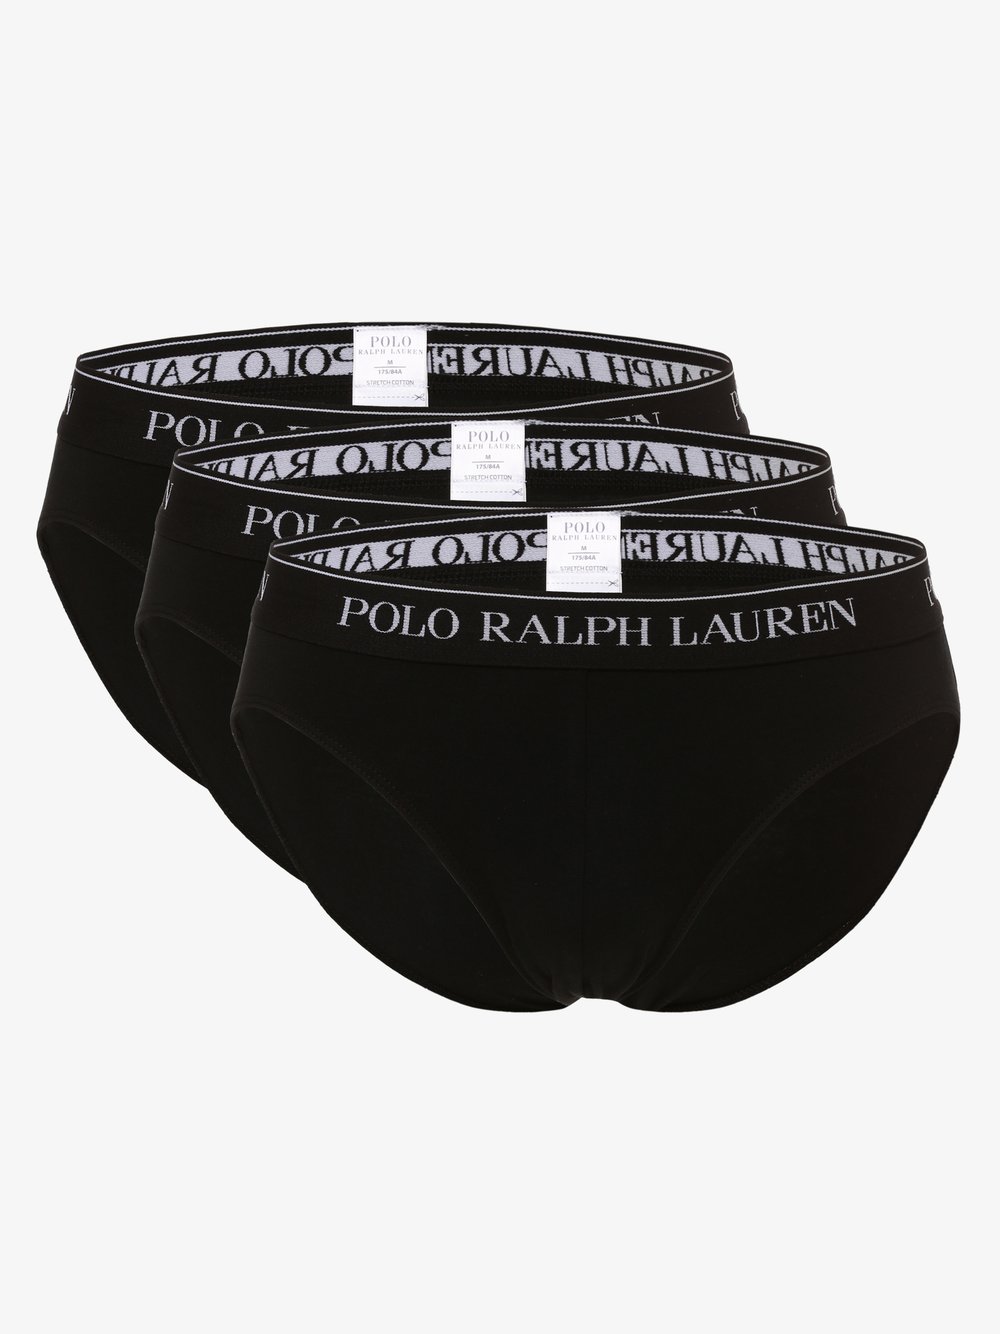 Polo Ralph Lauren Slipy pakowane po 3 szt. Mężczyźni Bawełna czarny jednolity, XL